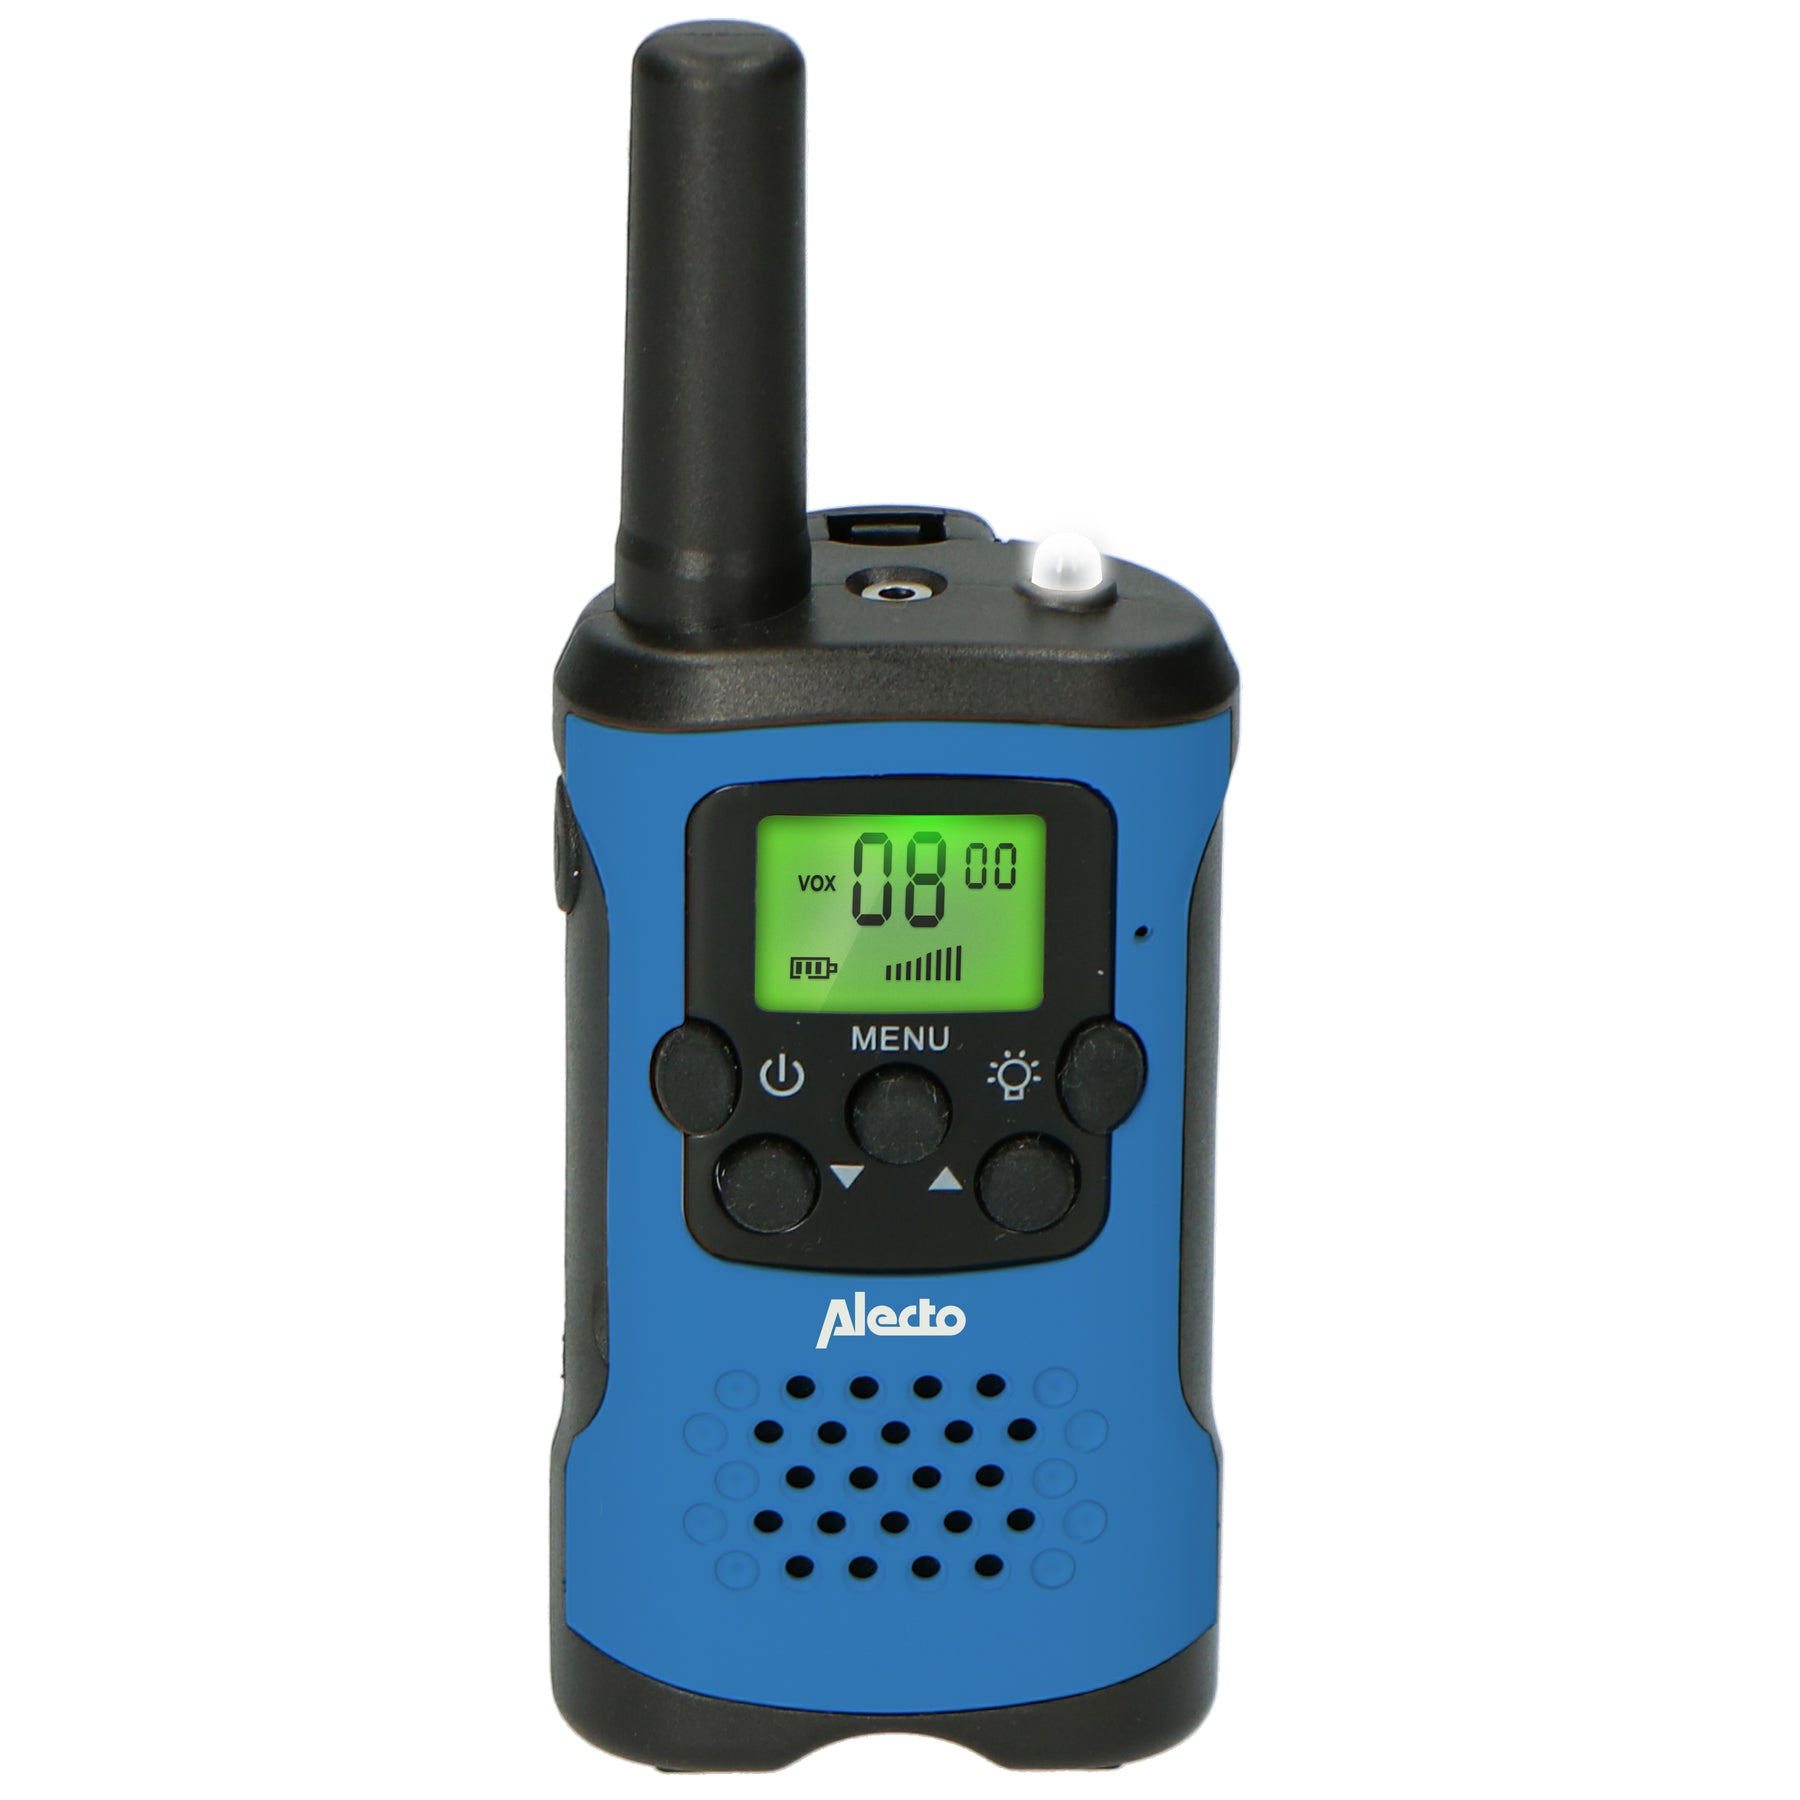 Alecto Fr-115bw - Lot De Deux Talkie-walkies Pour Enfants, Portée Jusqu'à 7  Kilomètres, Blue/noir à Prix Carrefour